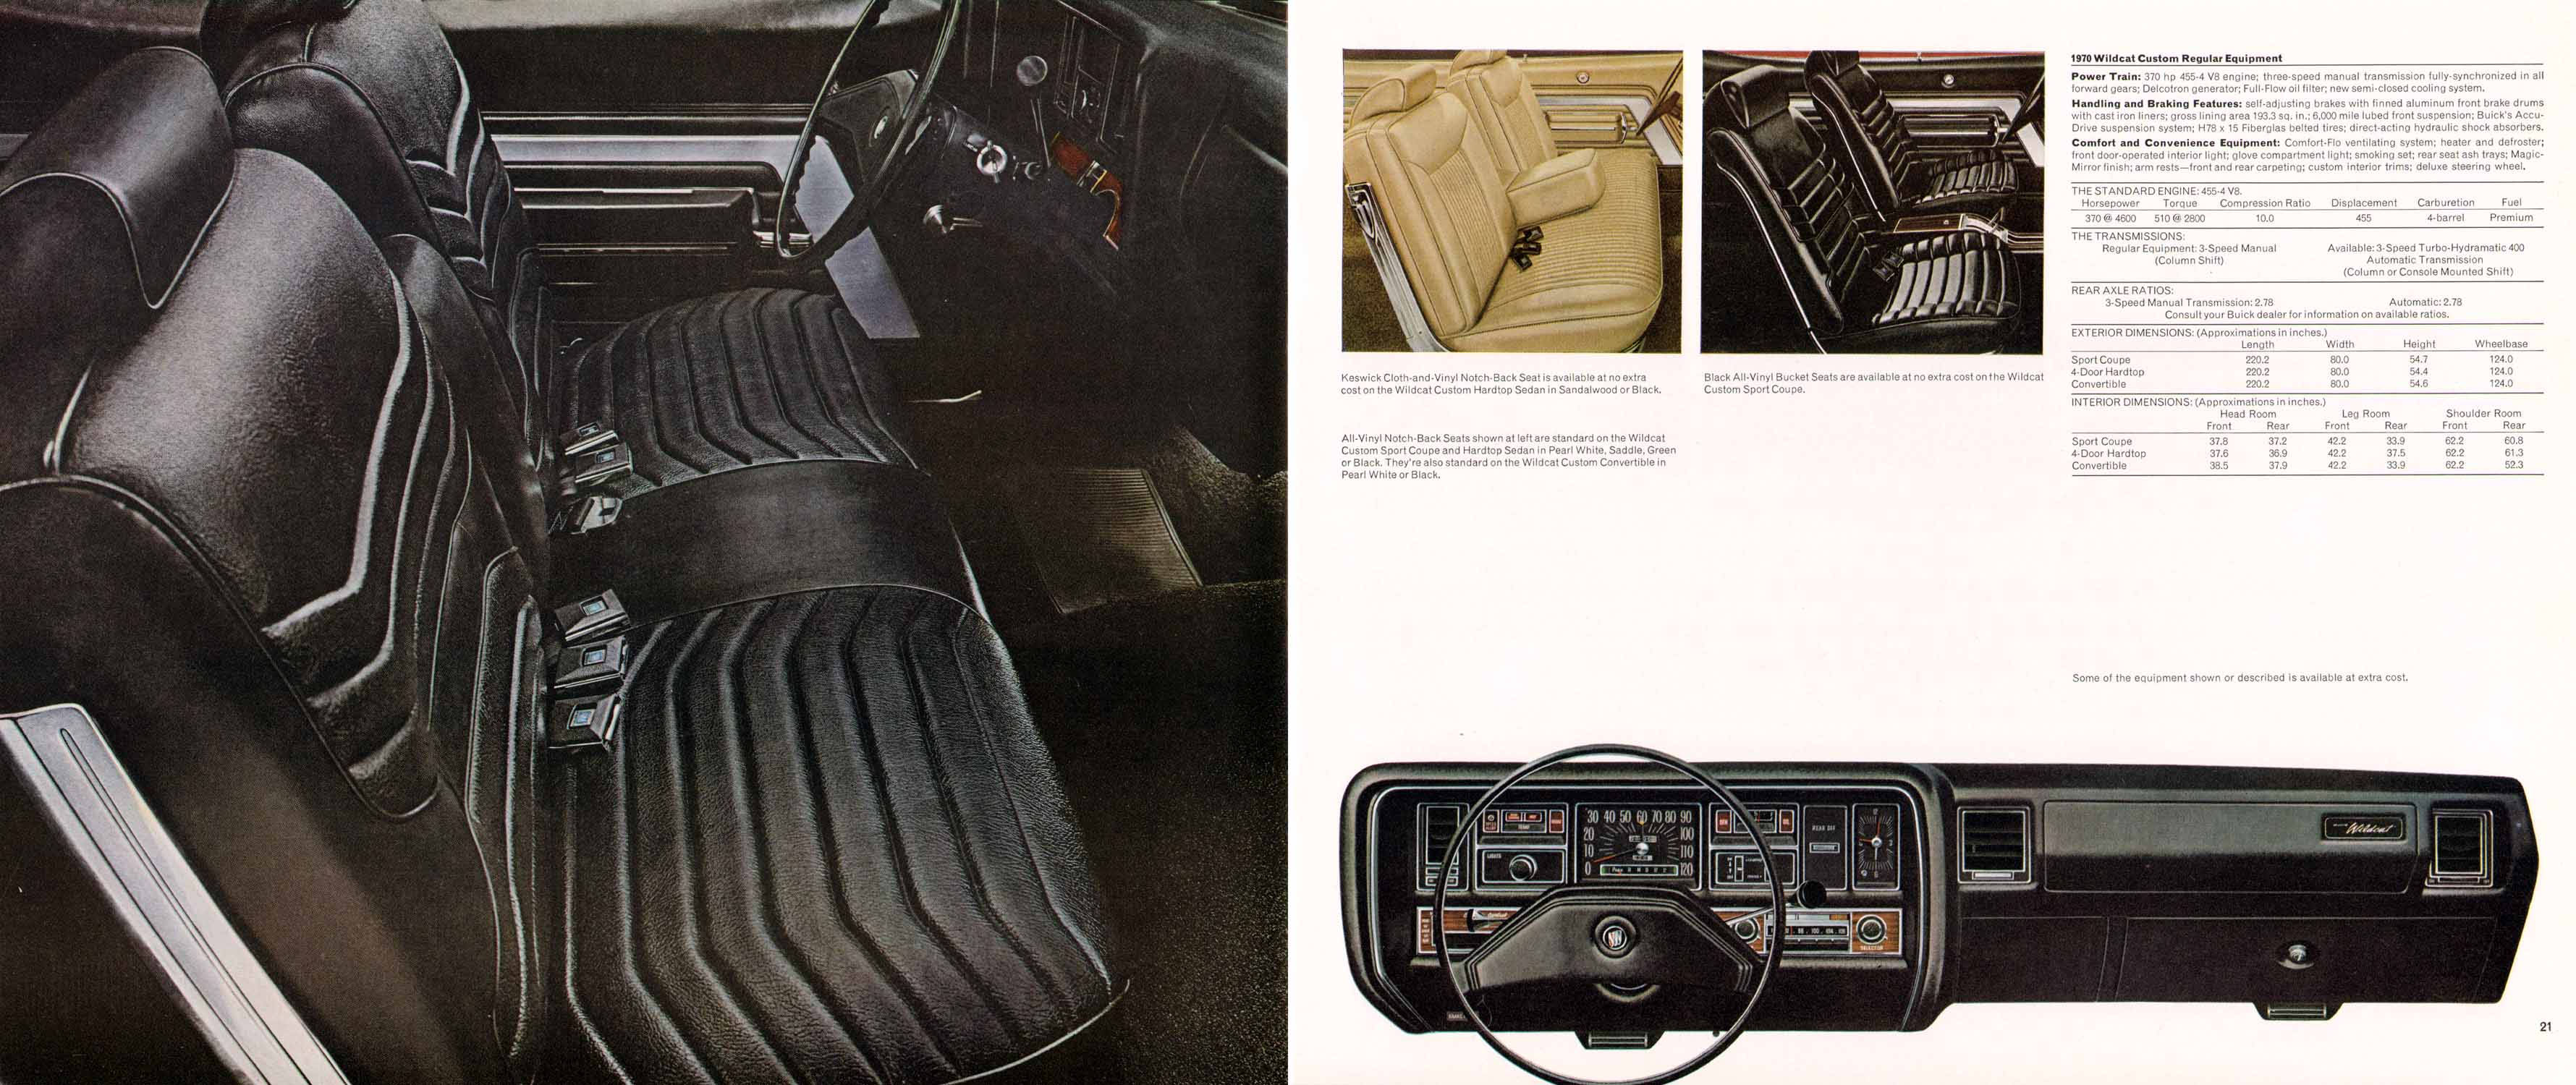 1970 Buick Full Line-20-21